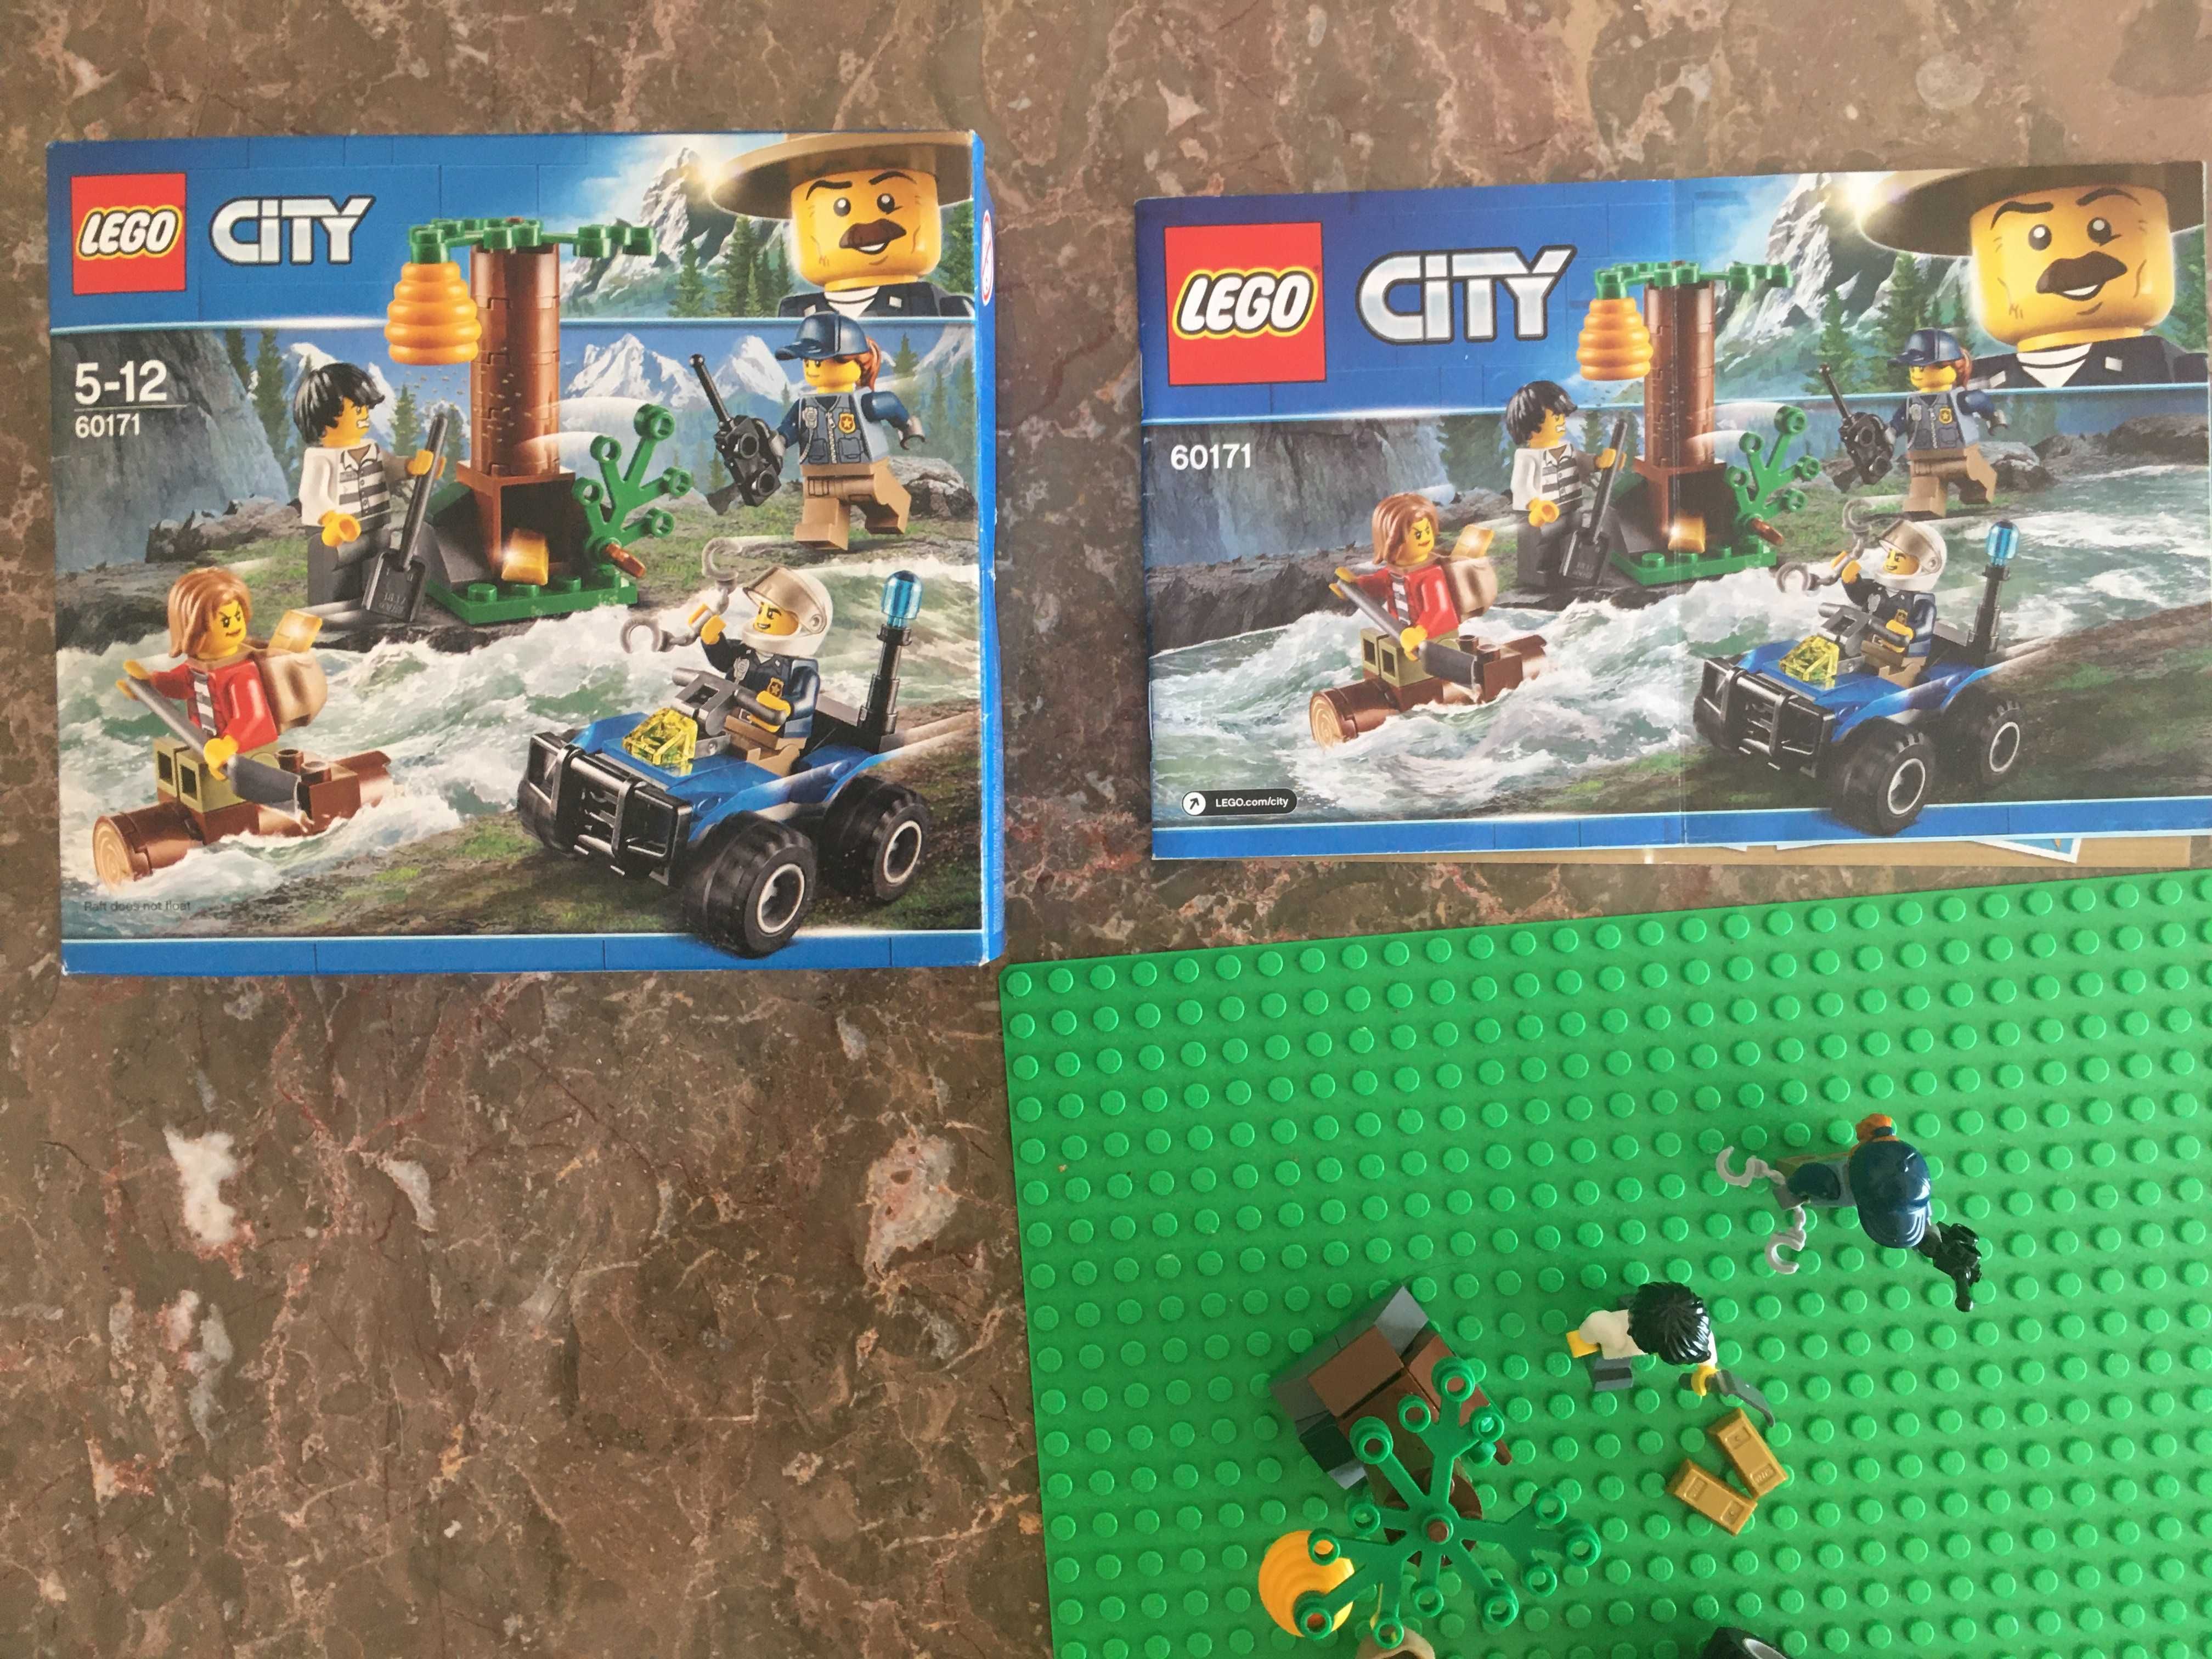 LEGO City 60171 Completo e em bom estado